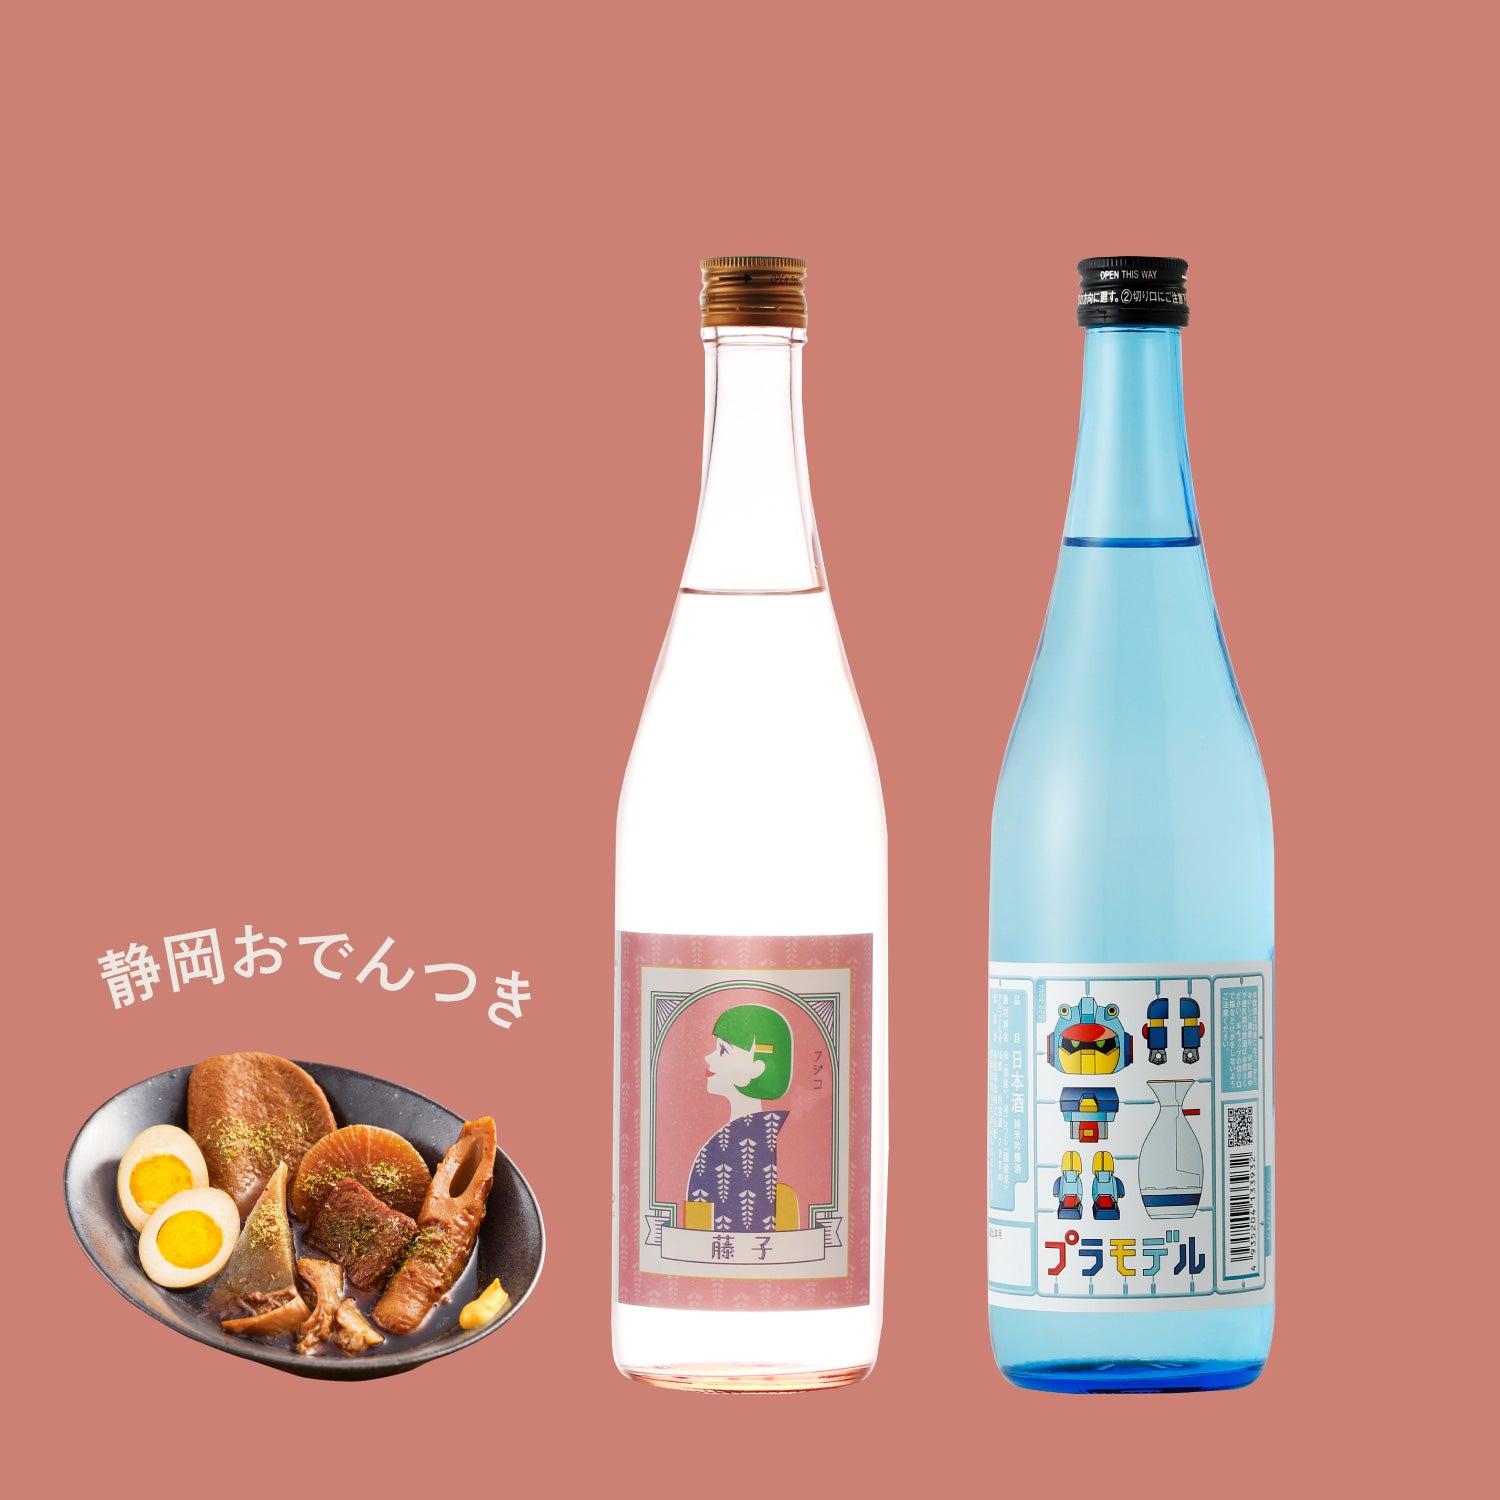 【30セット限定】中部の日本酒と楽しむ静岡おでんセット